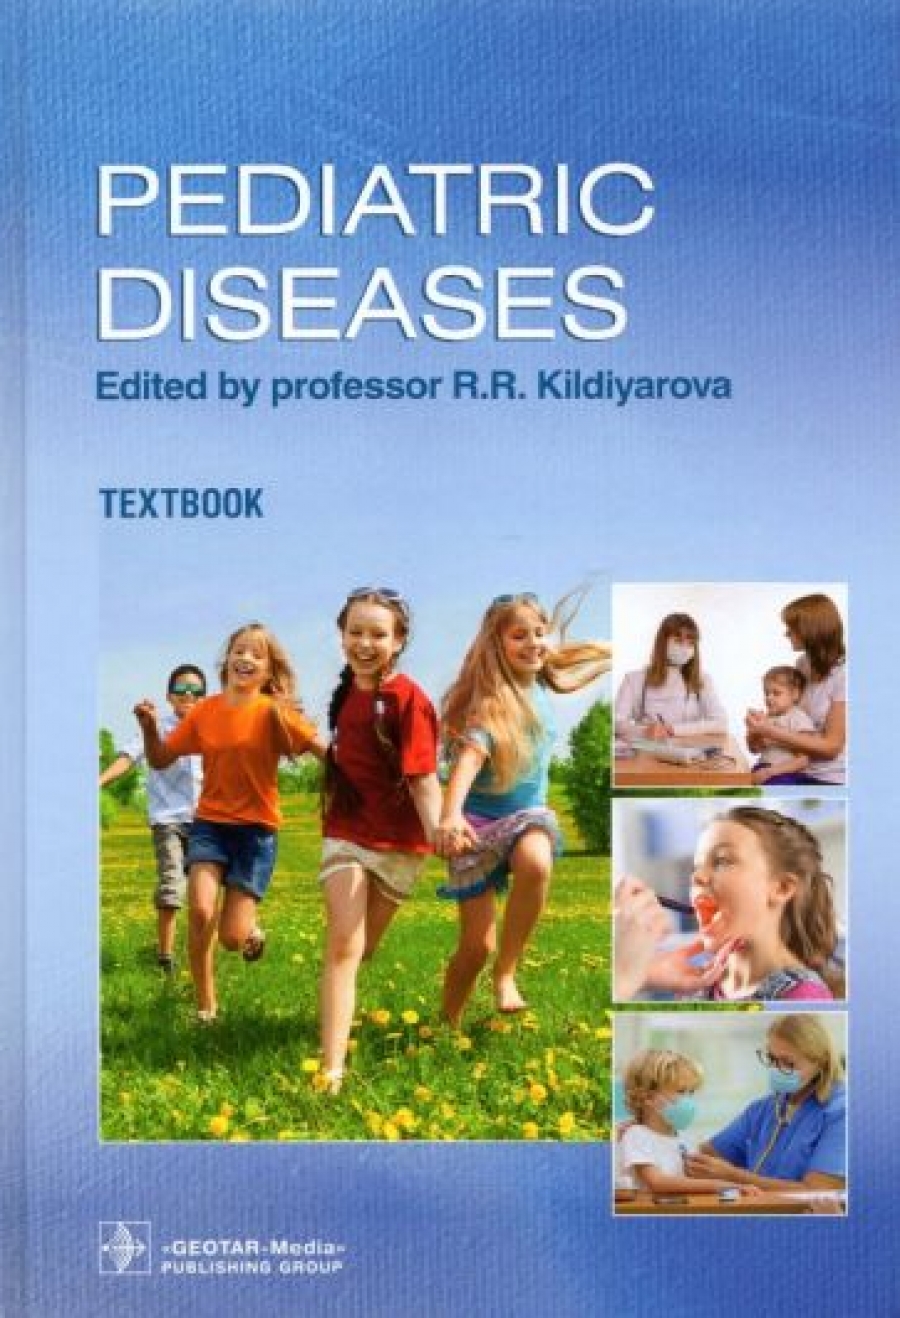  .. Pediatric diseases. Textbook 